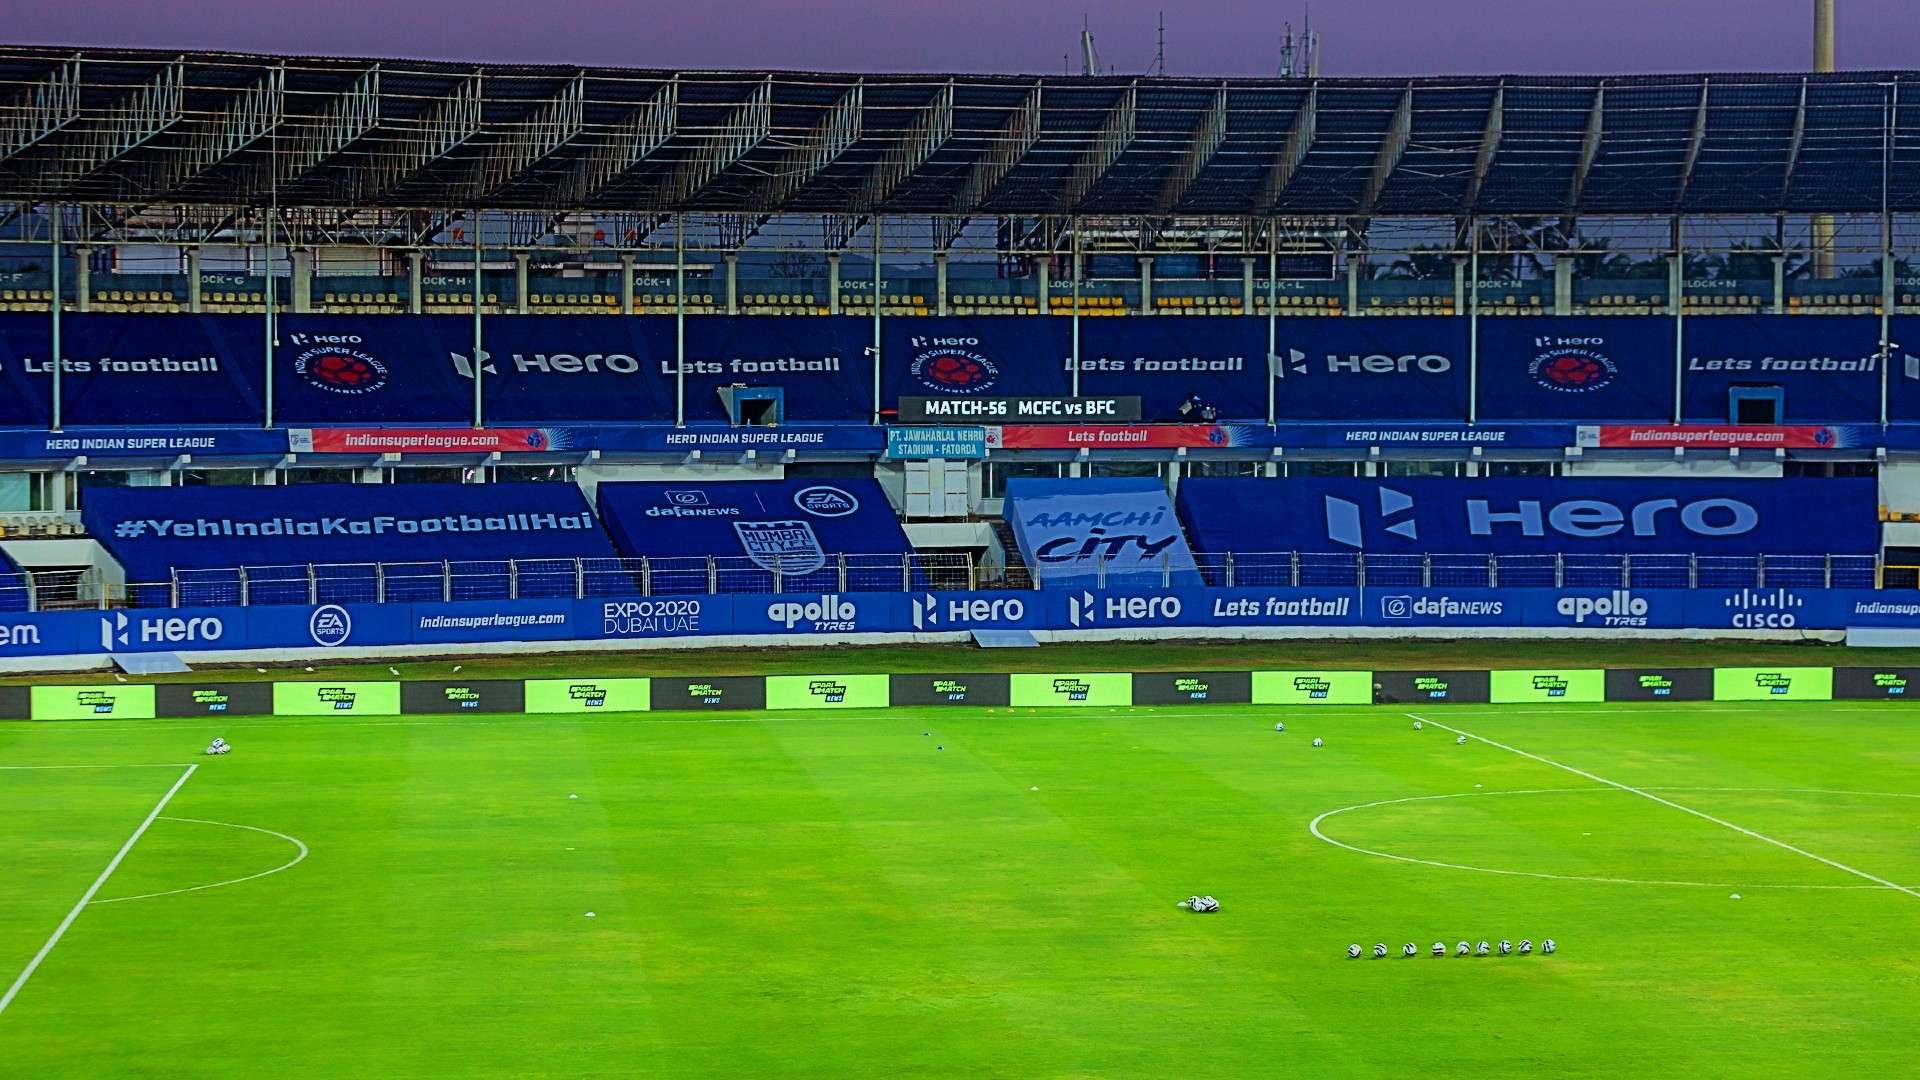 Fatorda stadium Indian Super League ground